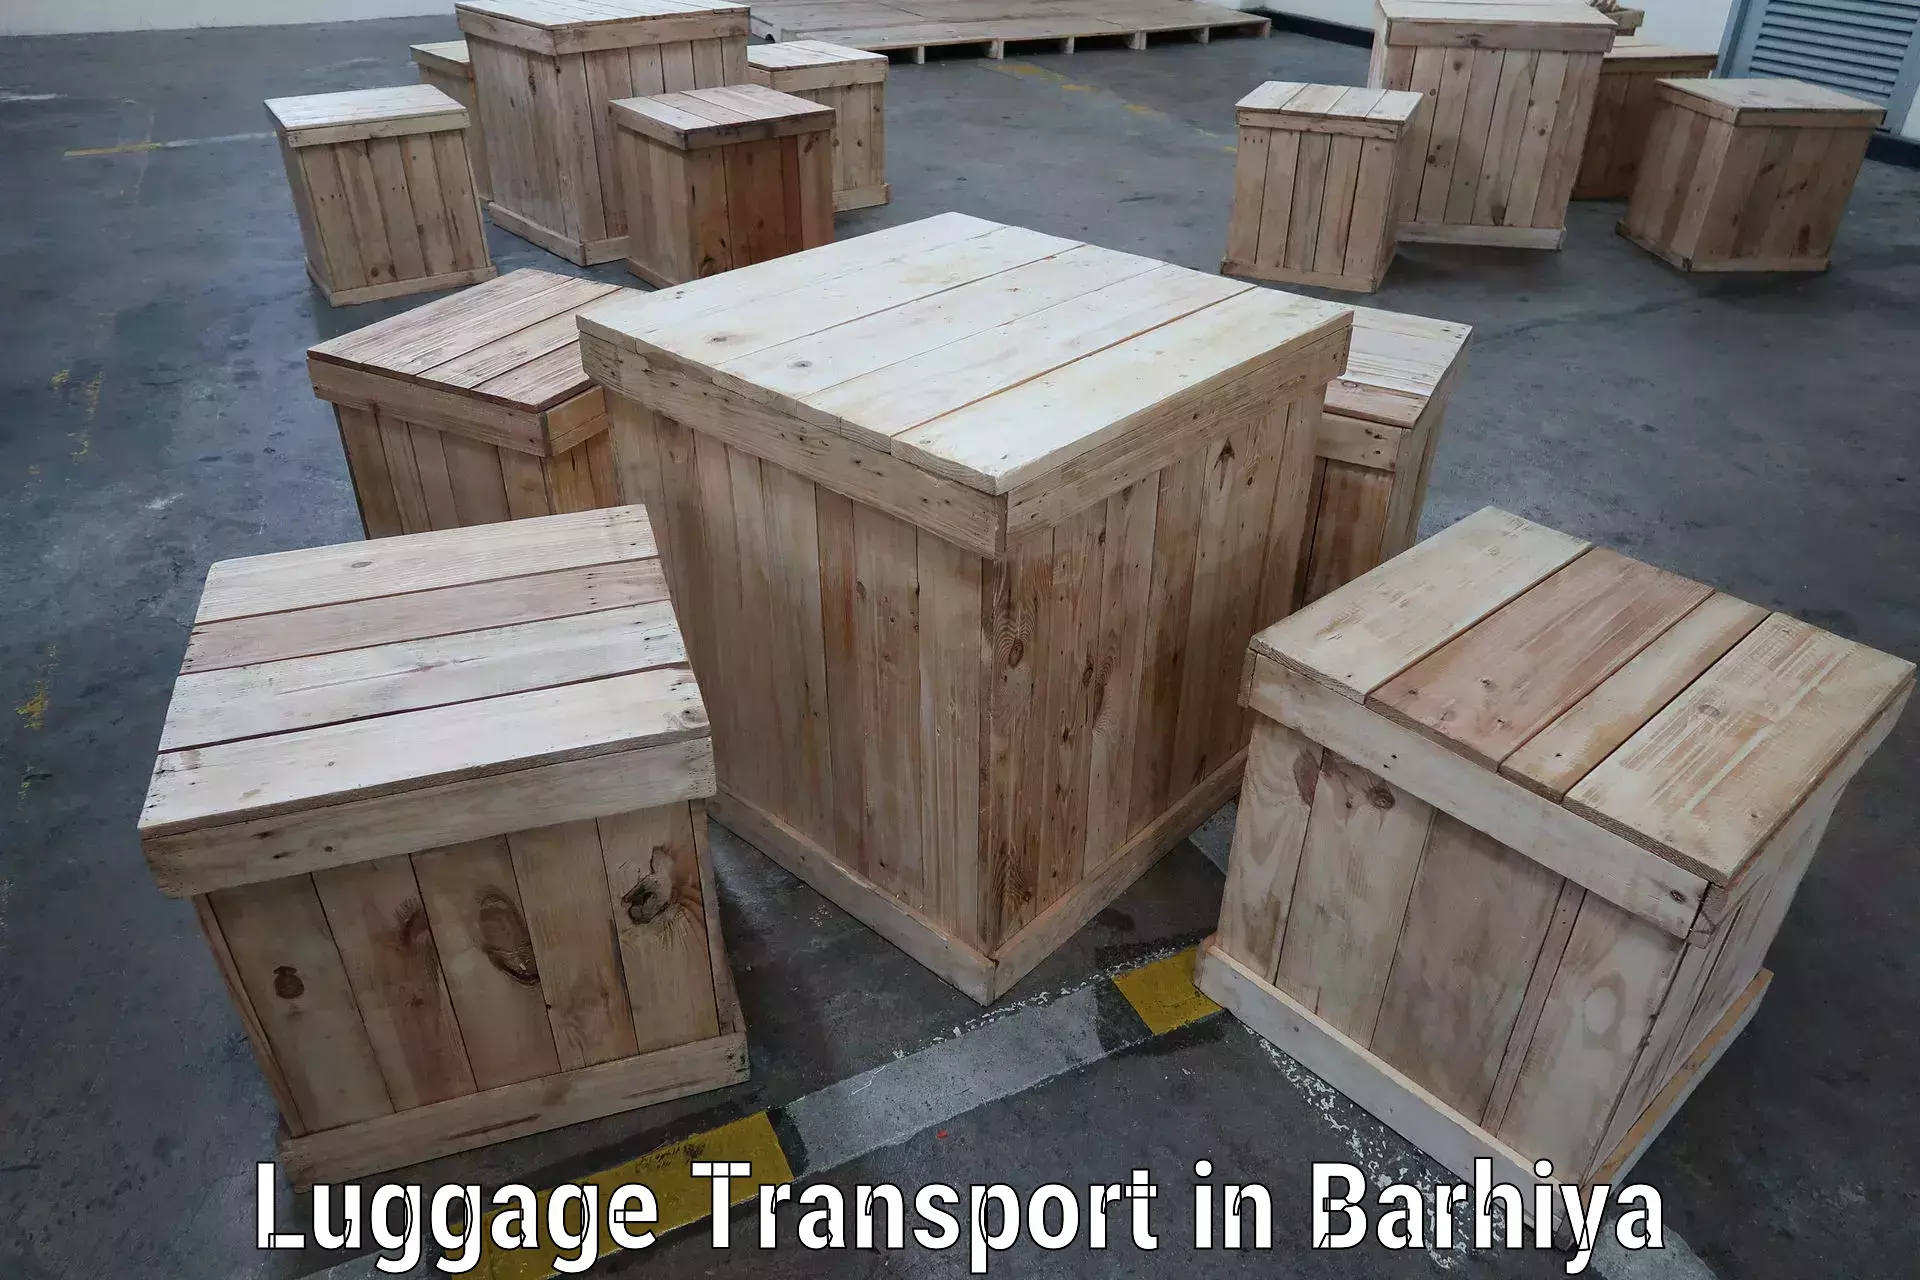 Luggage transport solutions in Barhiya